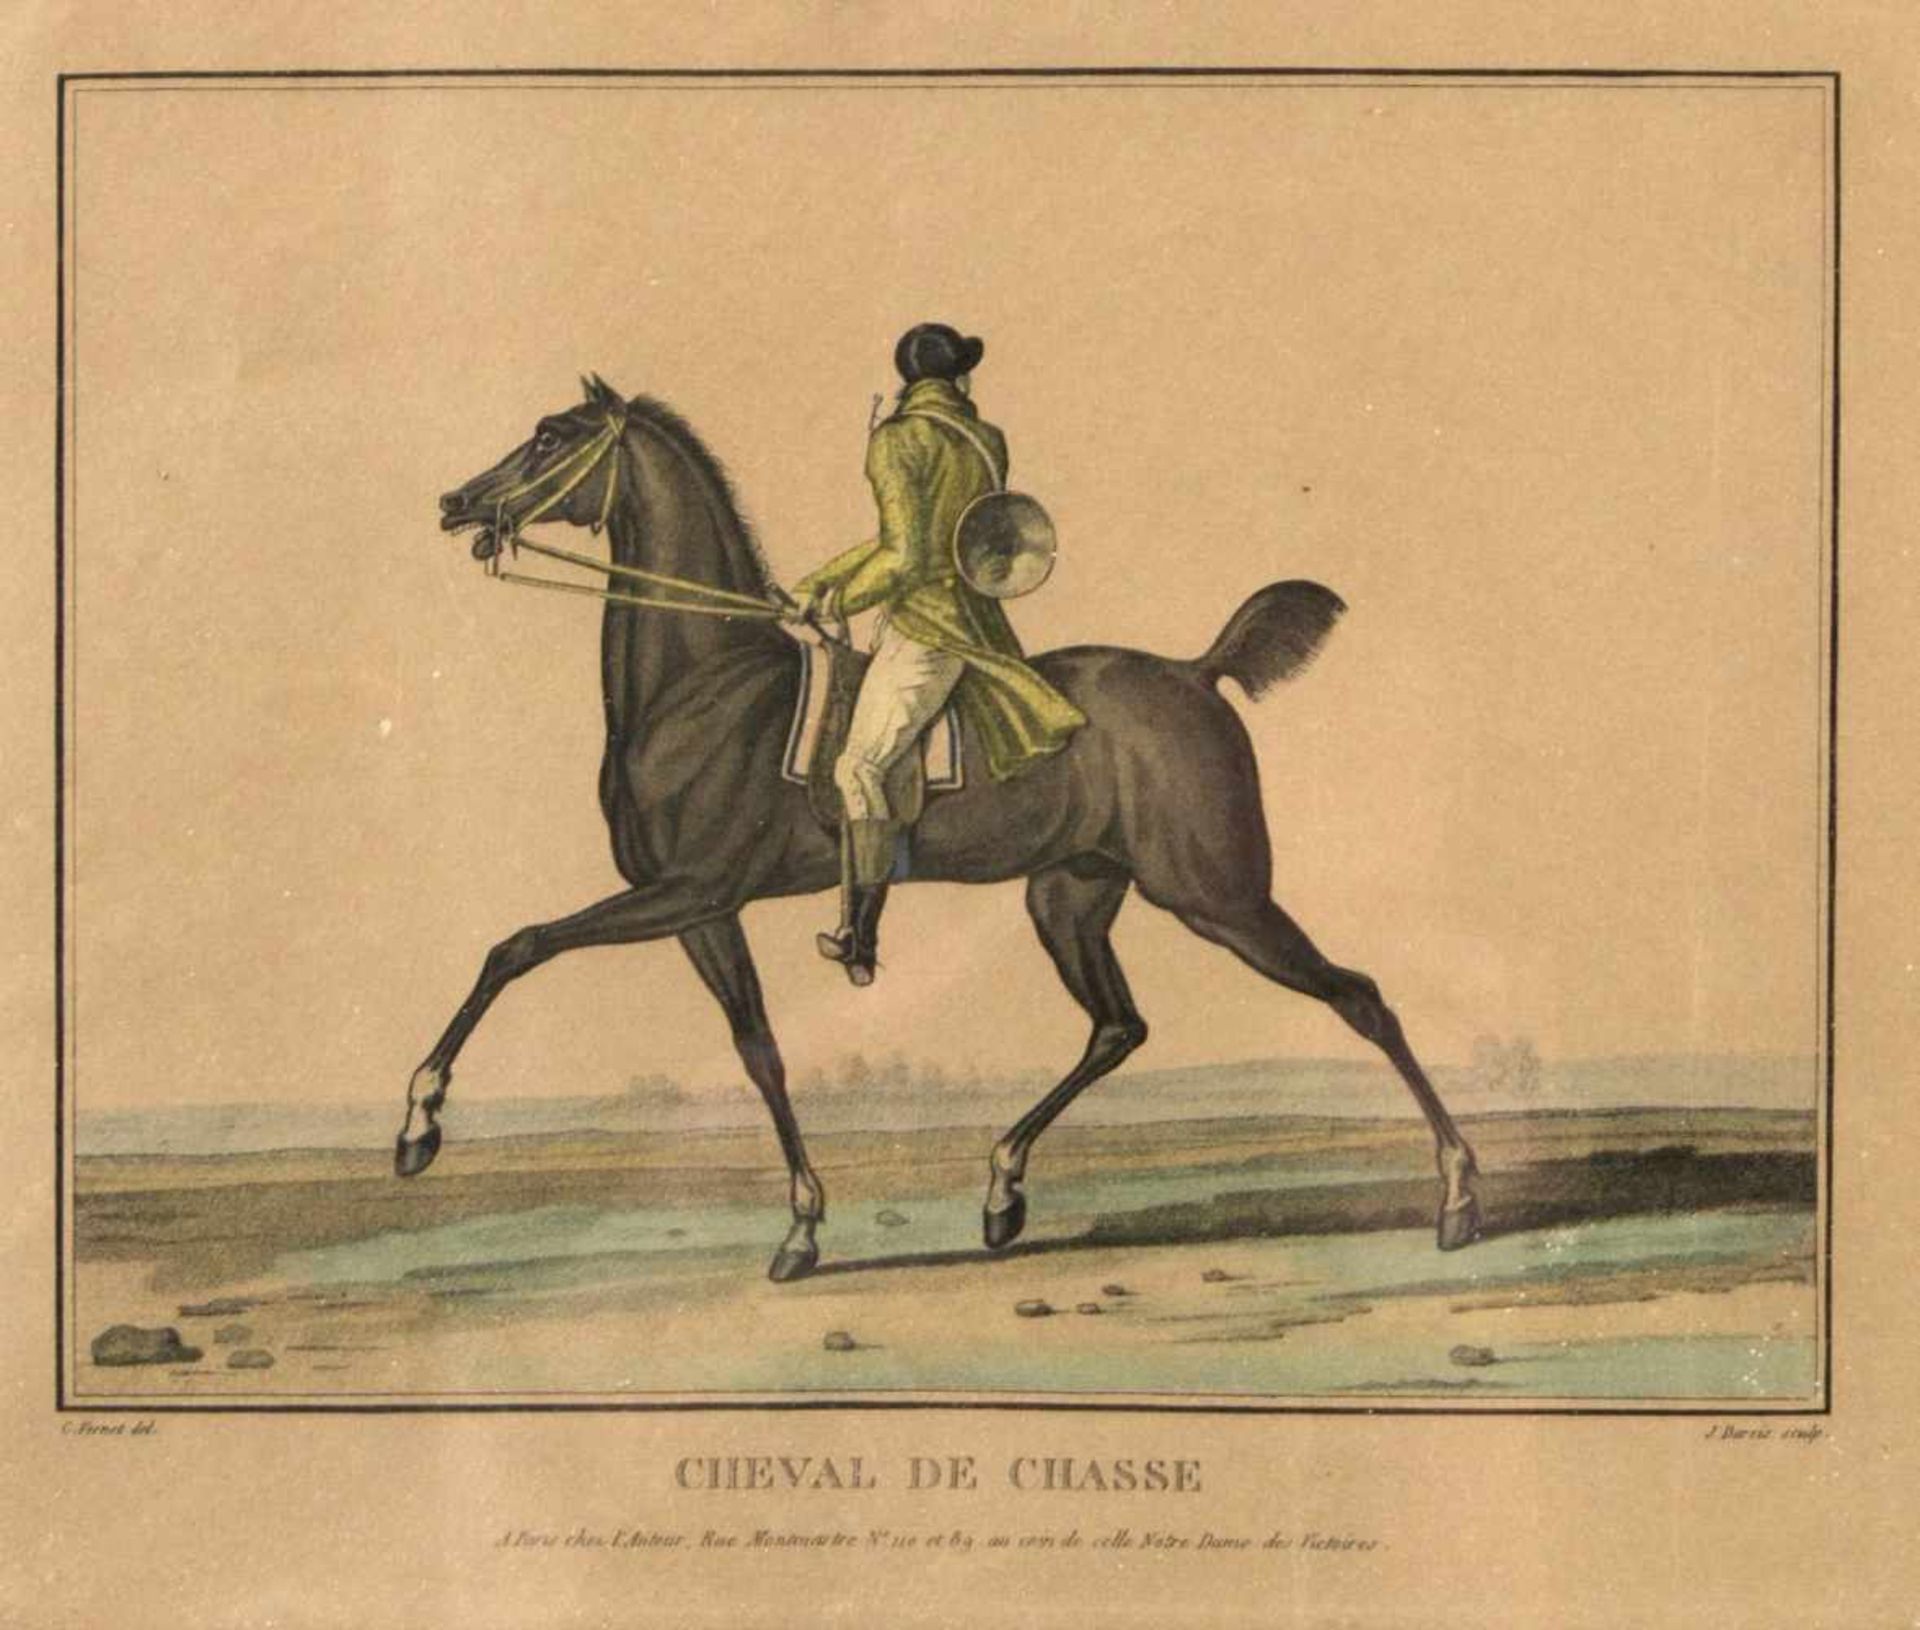 Darcis, J.Cheval de Chasse. Le Galop. 2 kol. Radierungen. 24,5 x 28,5 cm. Gebräunt und besch. - Bild 2 aus 3